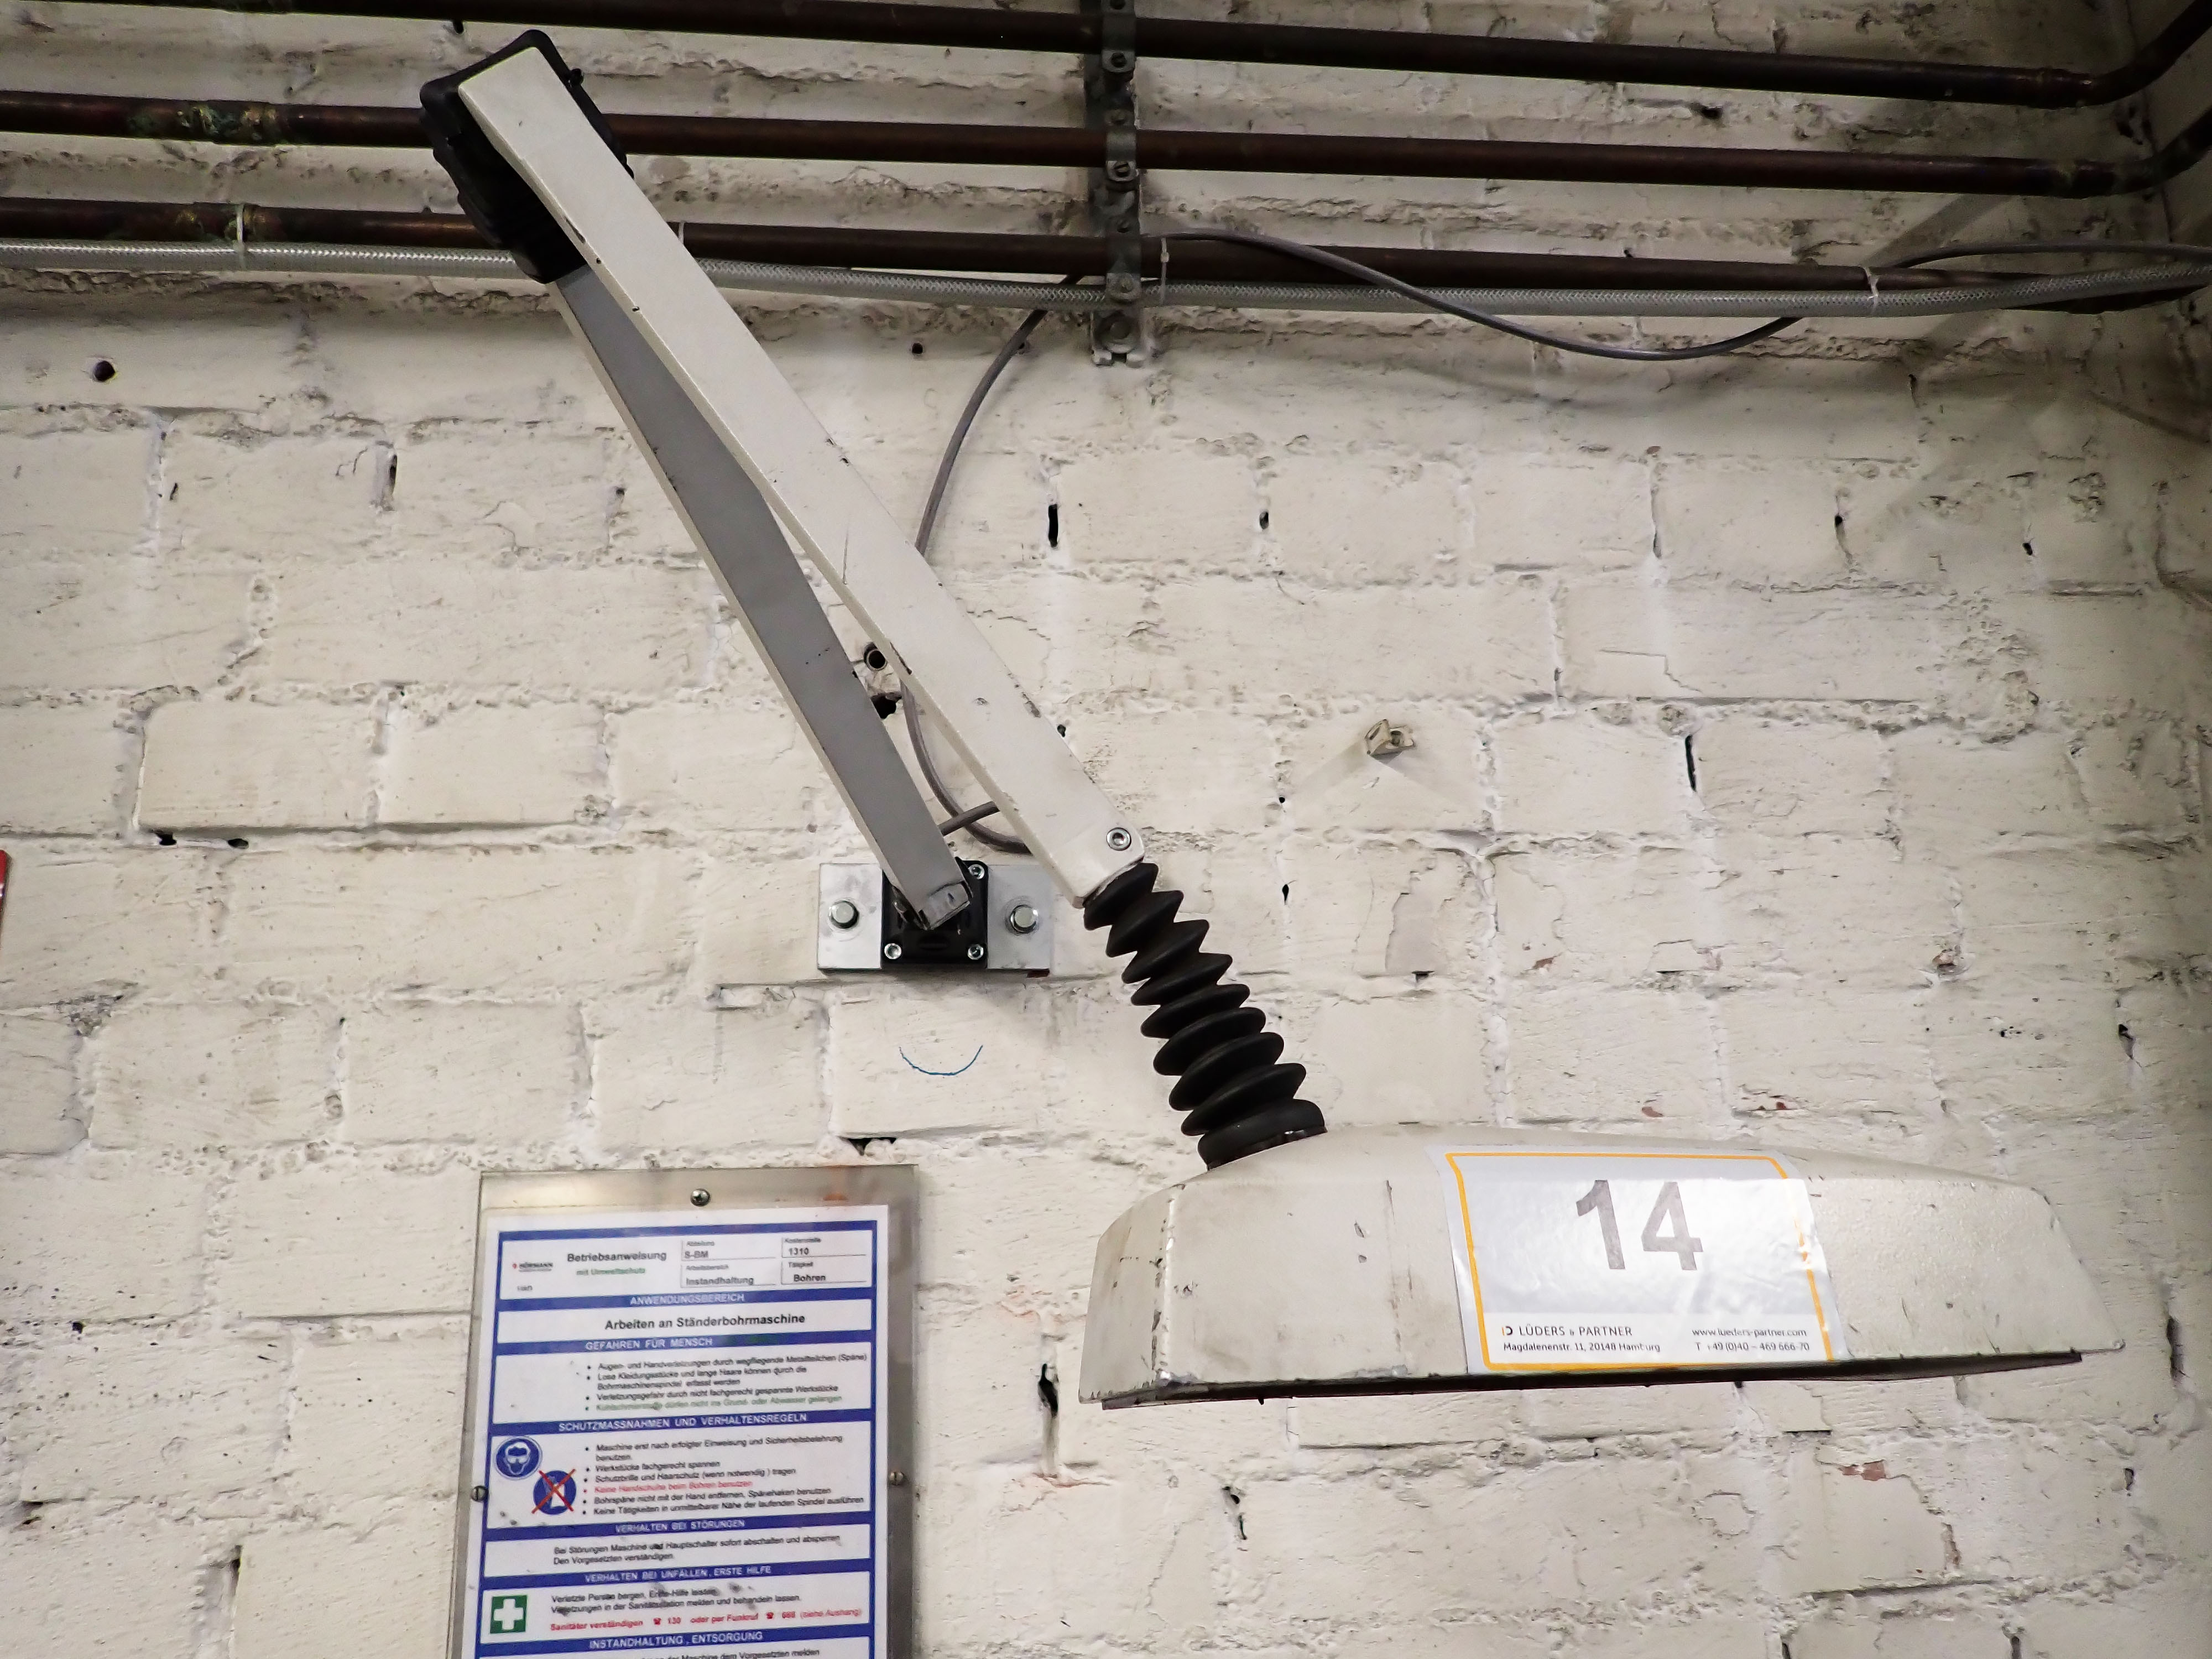 Pos.  14:  LED-Strahler – Lot  14:  LED spotlight